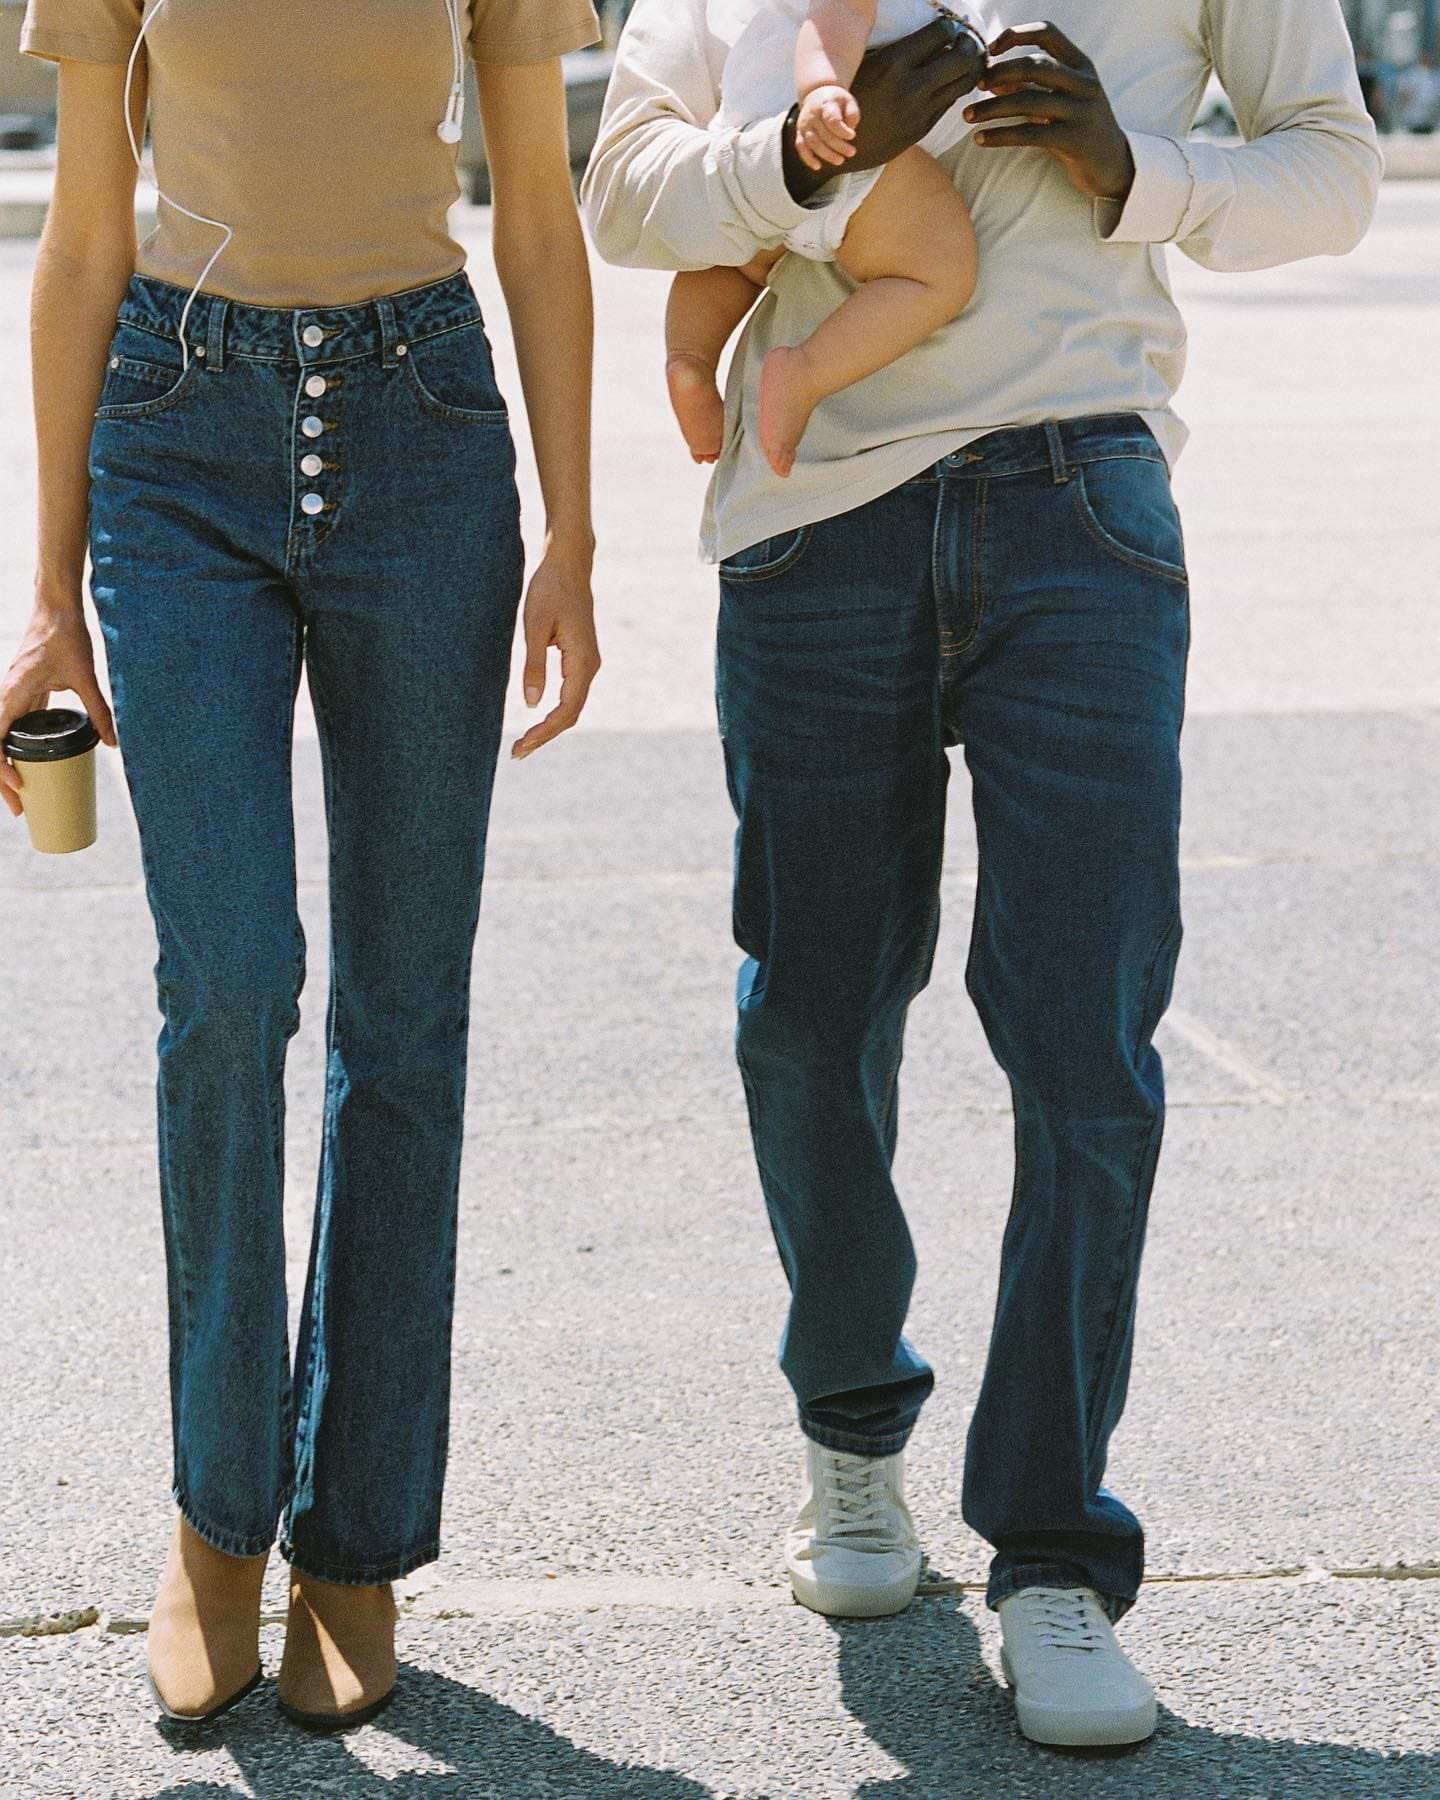 • Let The Jeans Tell Your Story • גלו את קולקציית הג׳ינסים החדשה בחנויות ובאתר ותהנו מ-40% הנחה על הזוג השני. #CastroFashion #JustJeans * בכפוף לתקנון | לפריטים המשתתפים במבצע | ללא כפל הטבות.